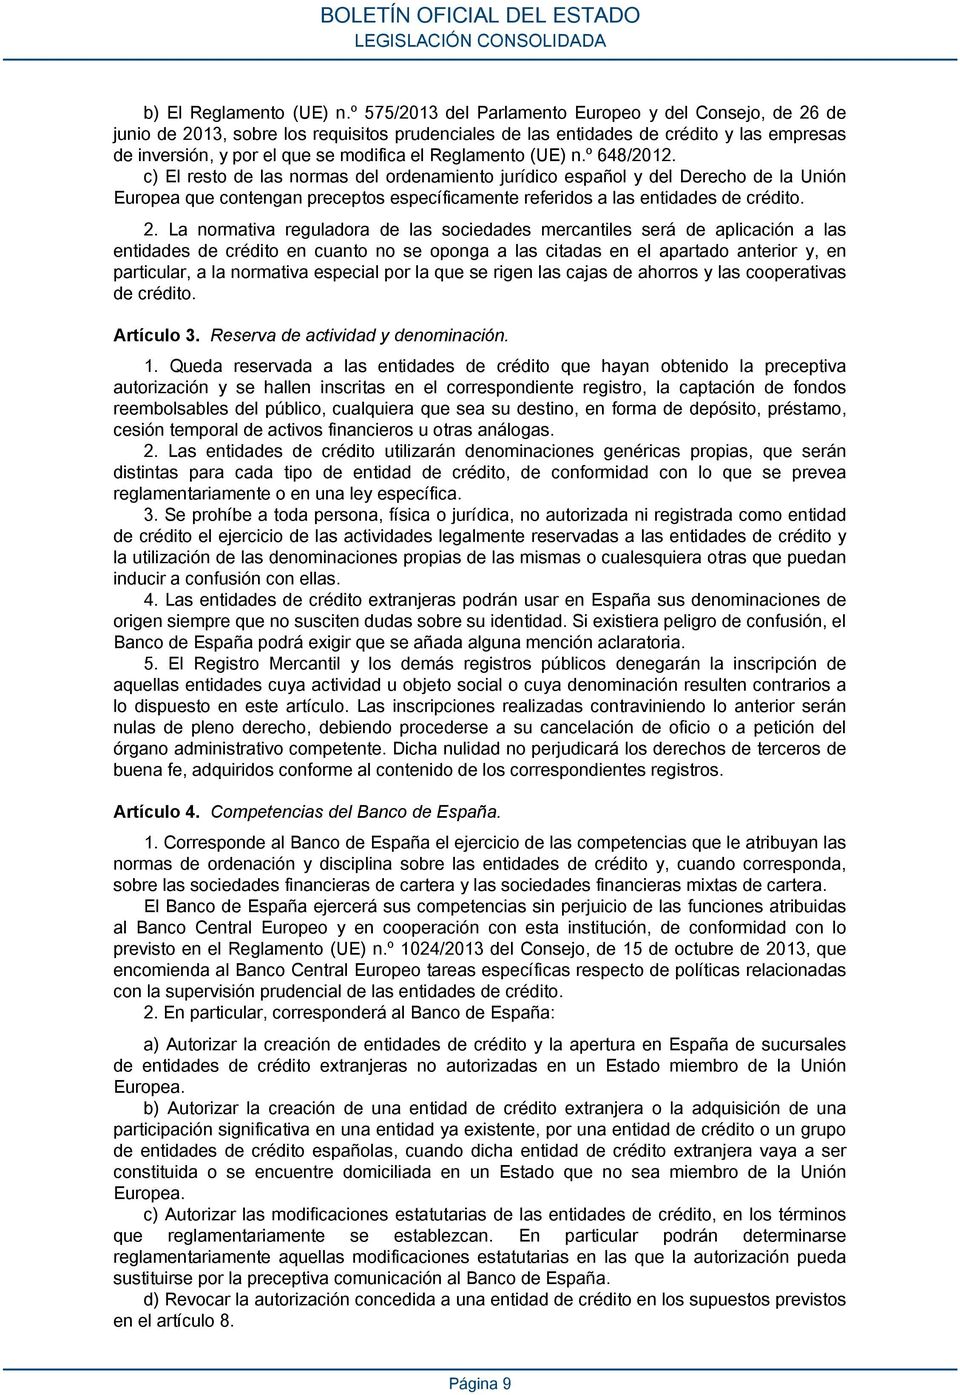 Reglamento (UE) n.º 648/2012.